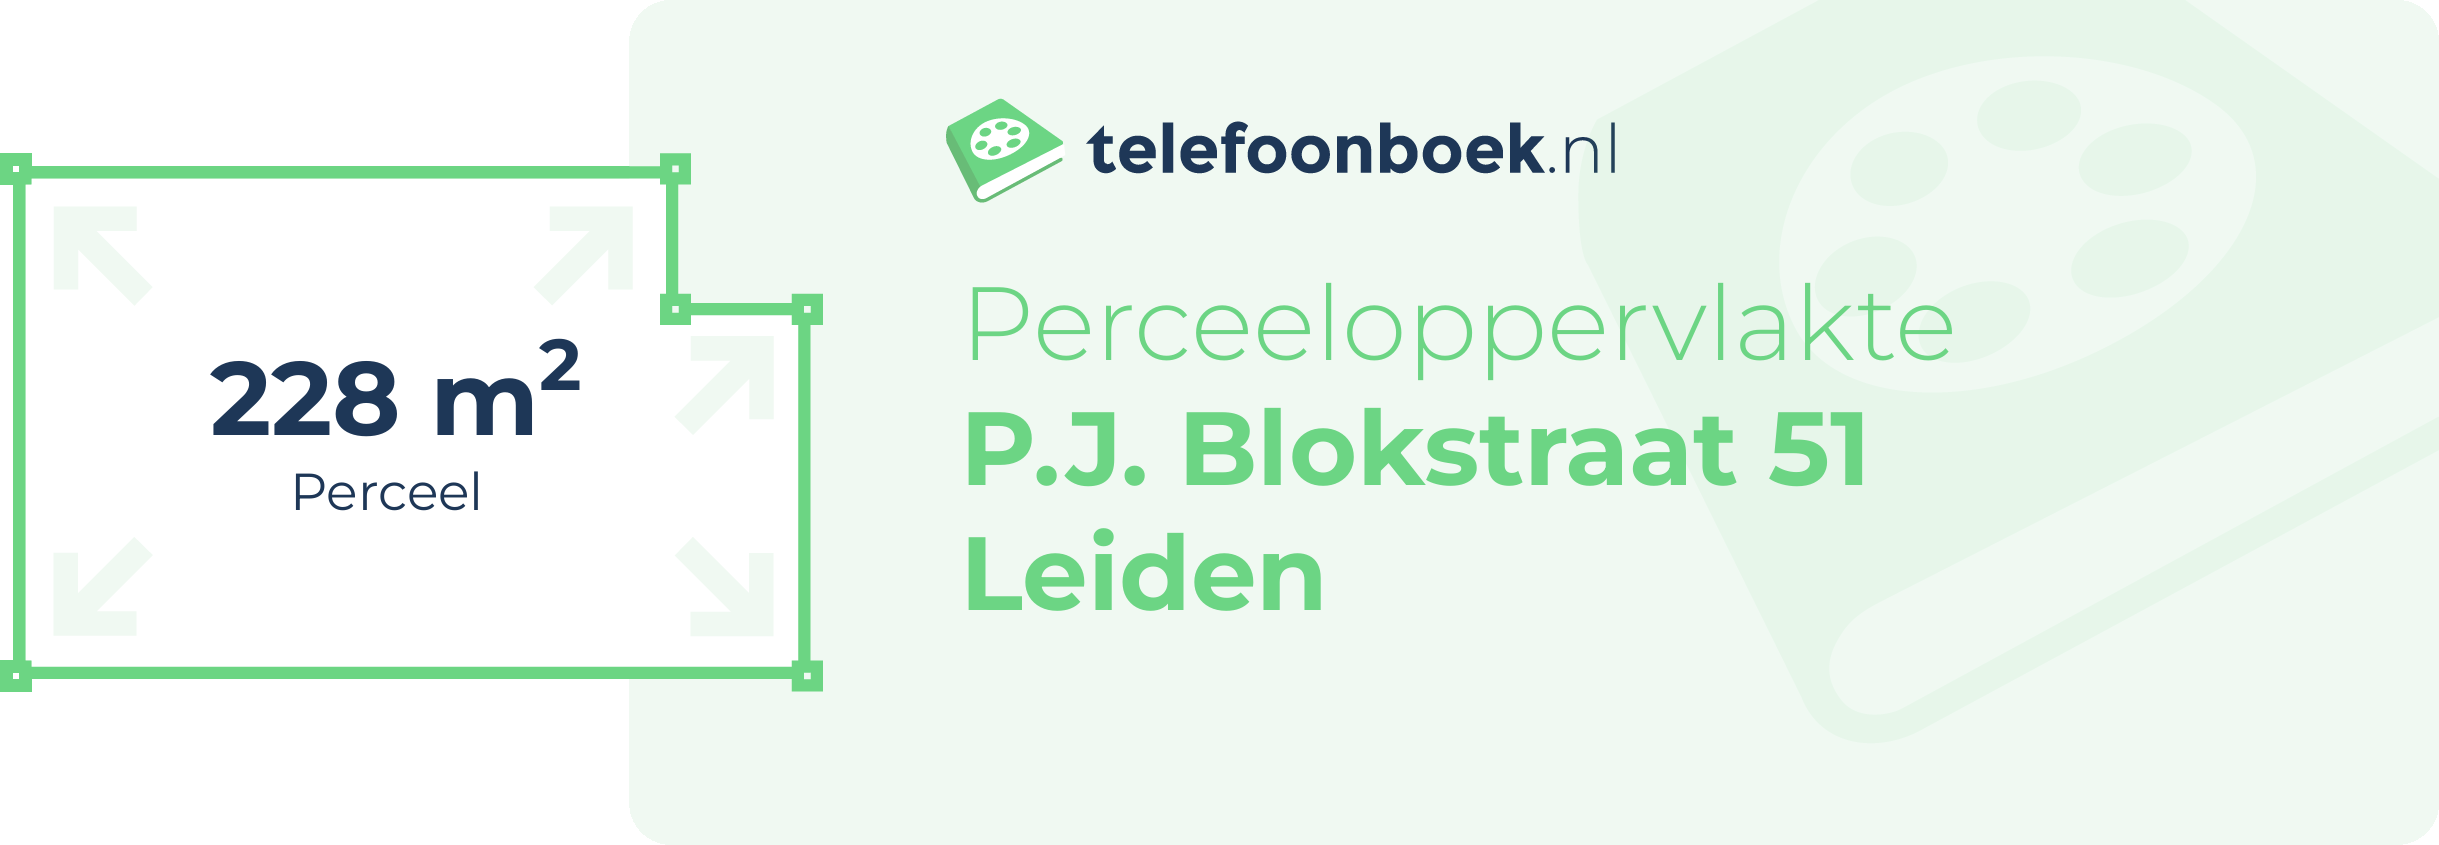 Perceeloppervlakte P.J. Blokstraat 51 Leiden